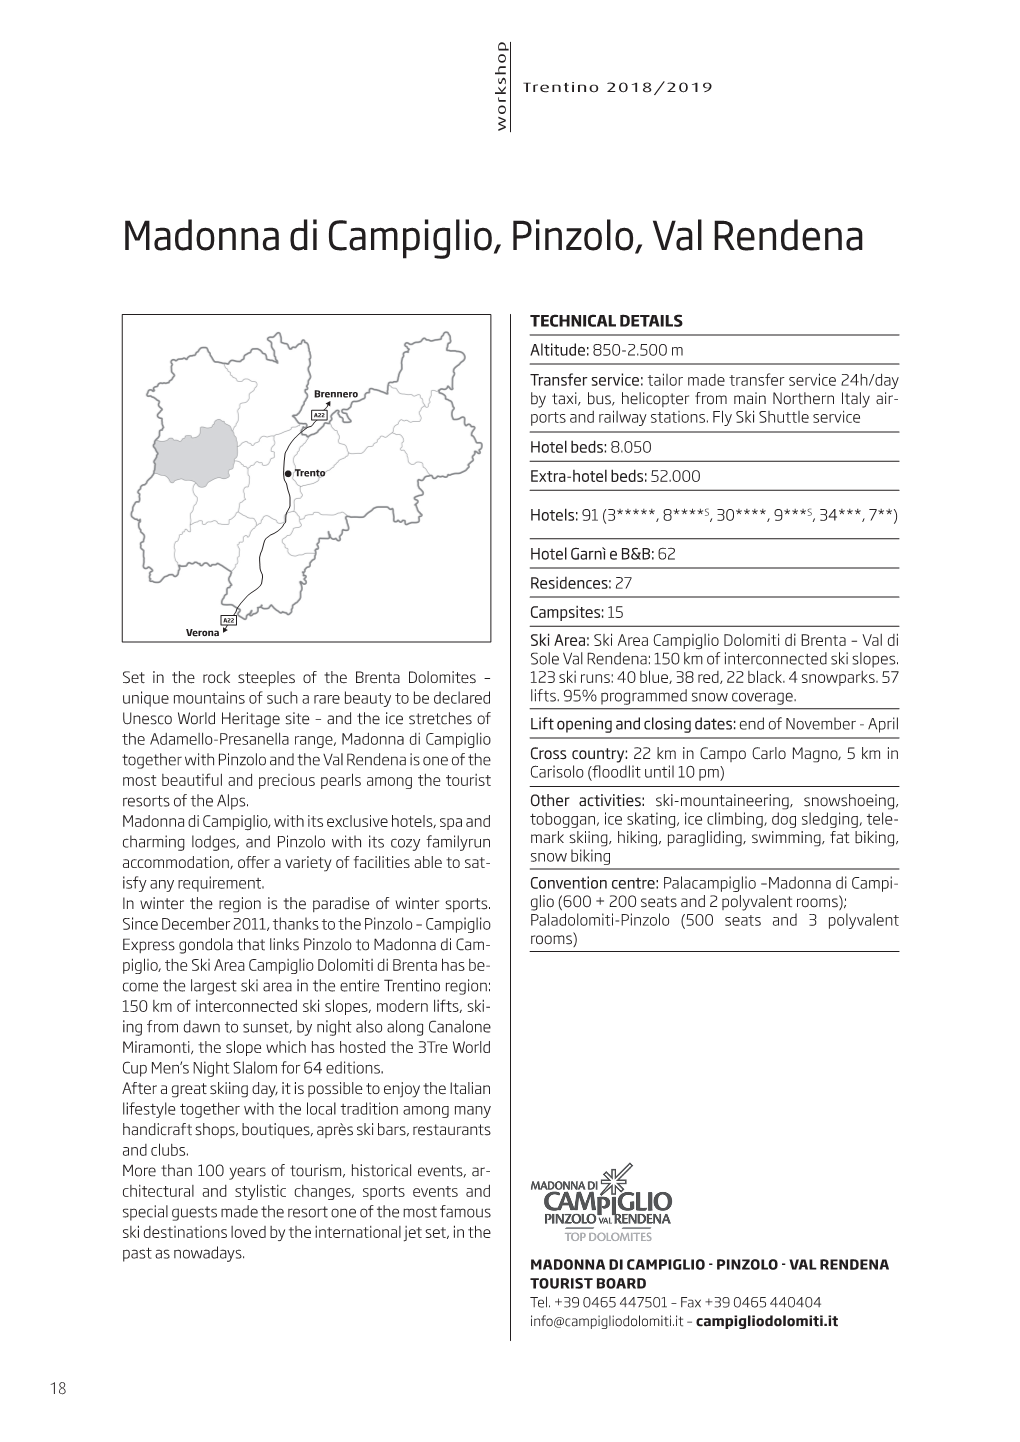 Madonna Di Campiglio, Pinzolo, Val Rendena